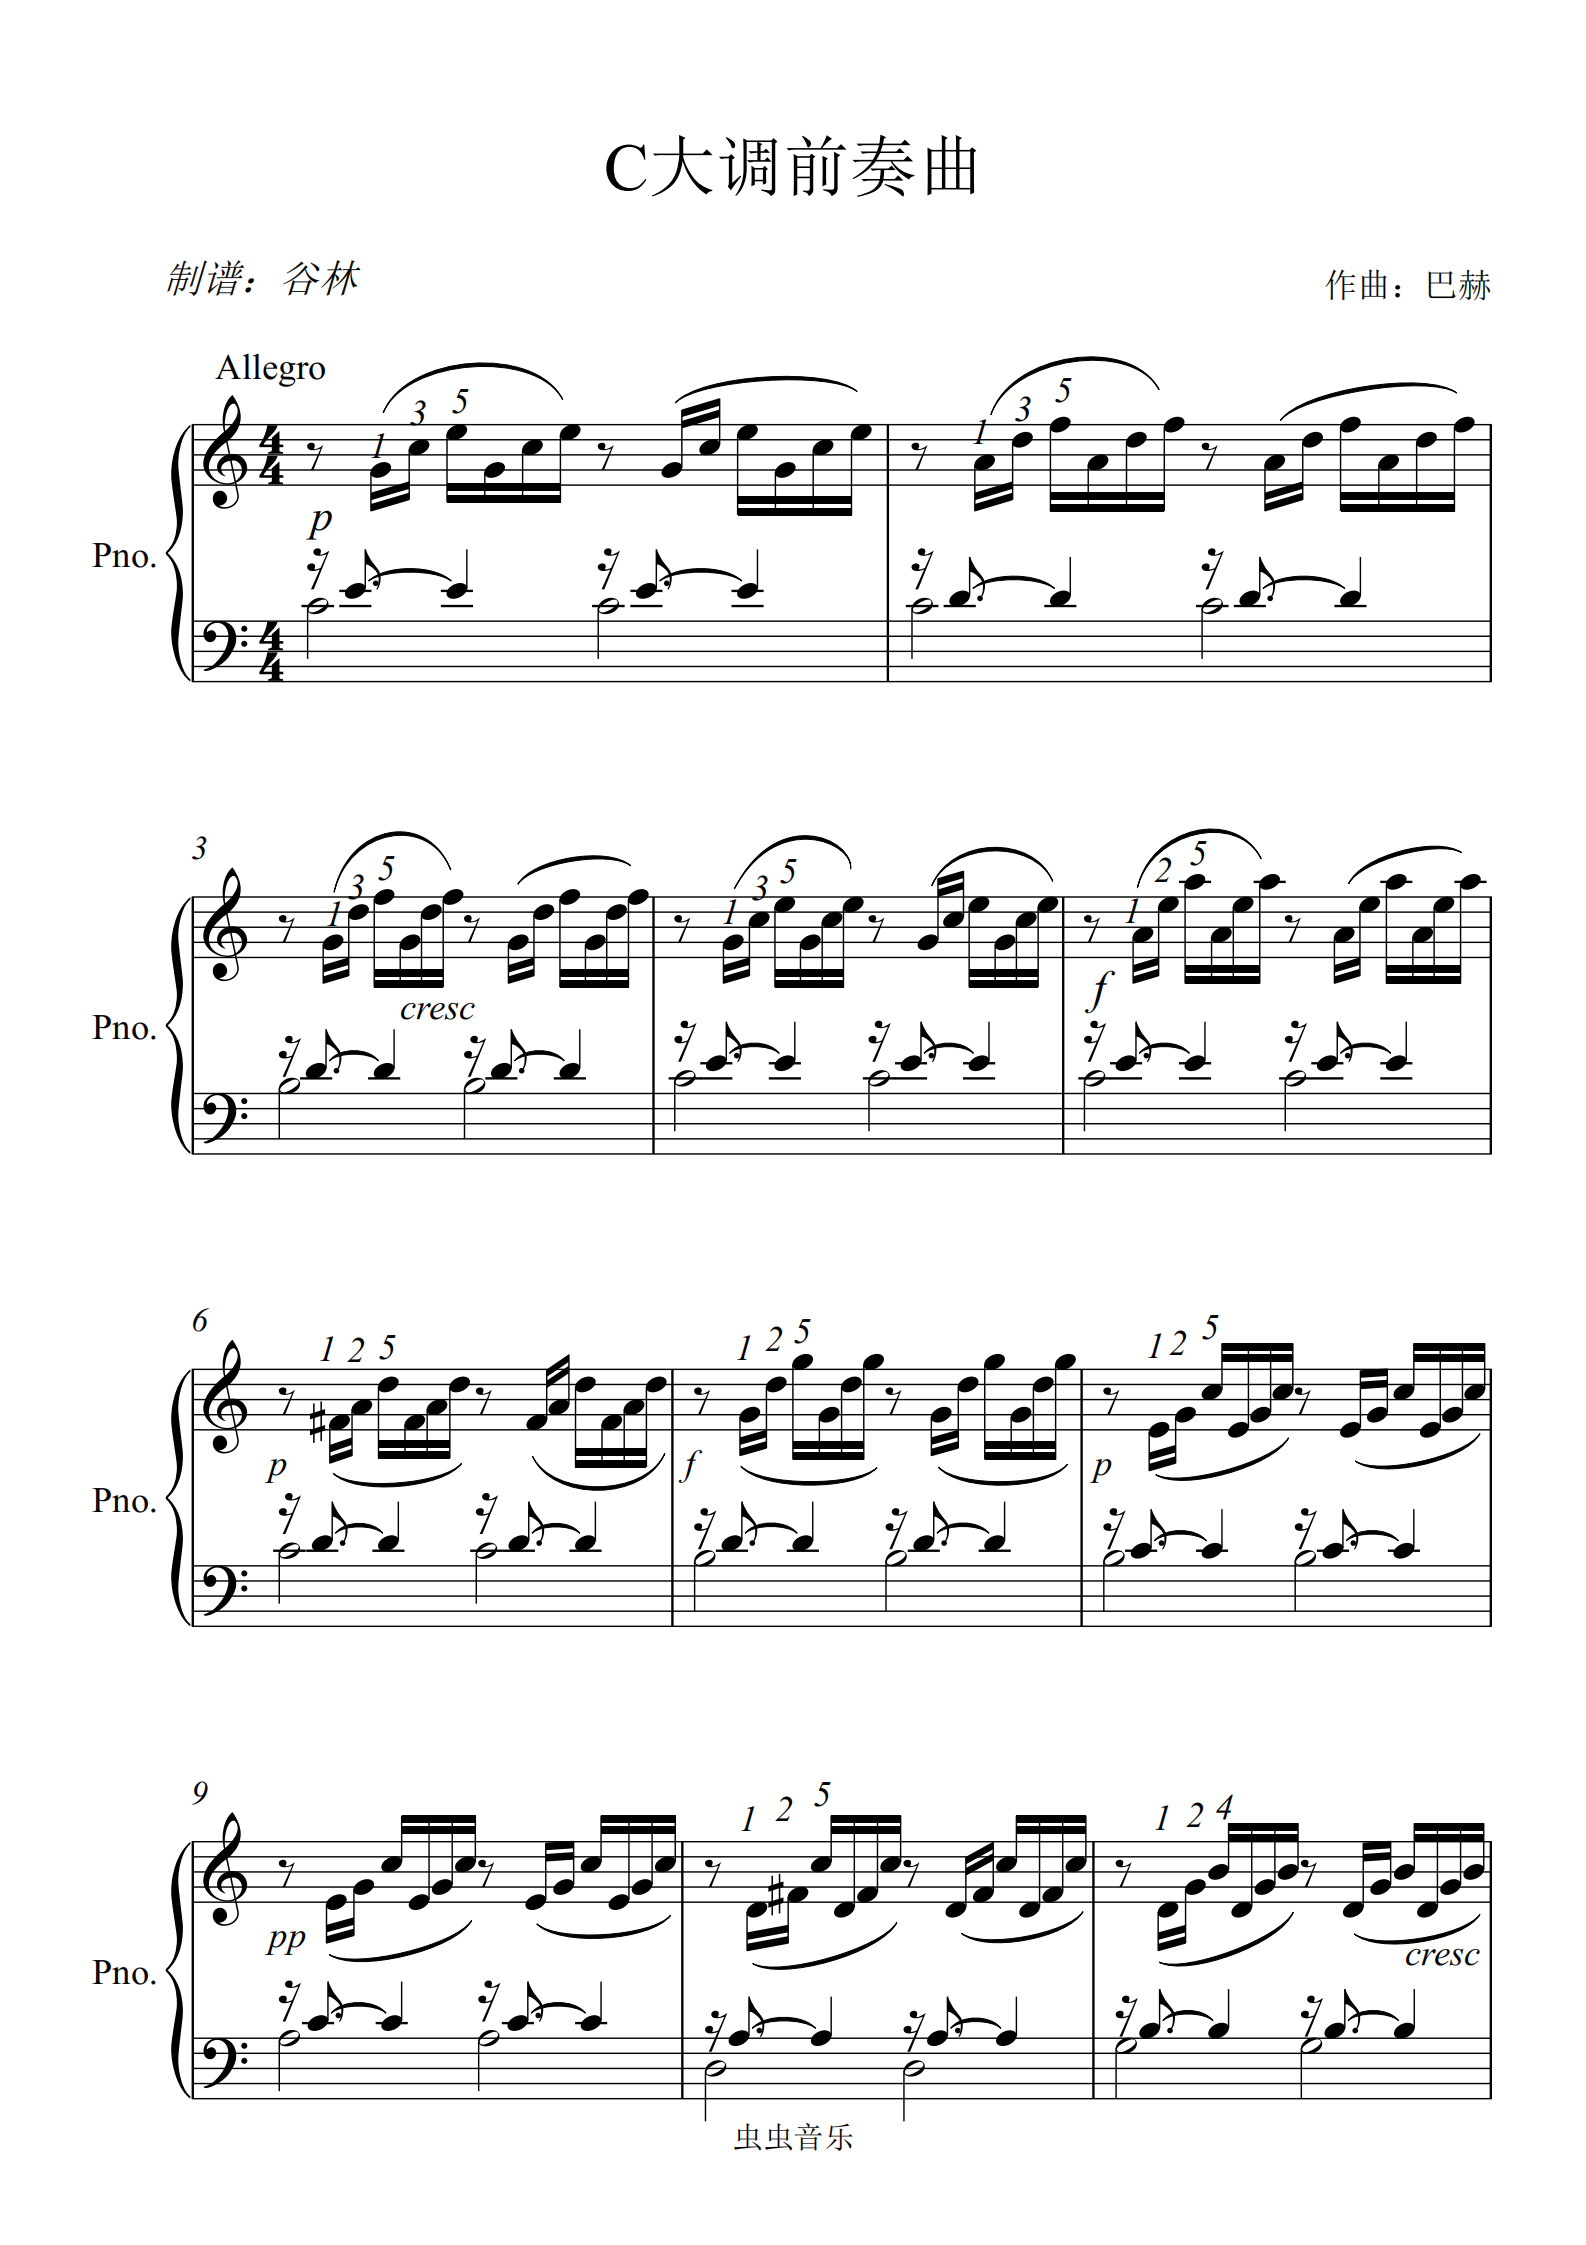 原版谱带指法,《c大调前奏曲》原版谱带指法钢琴谱,《c大调前奏曲》